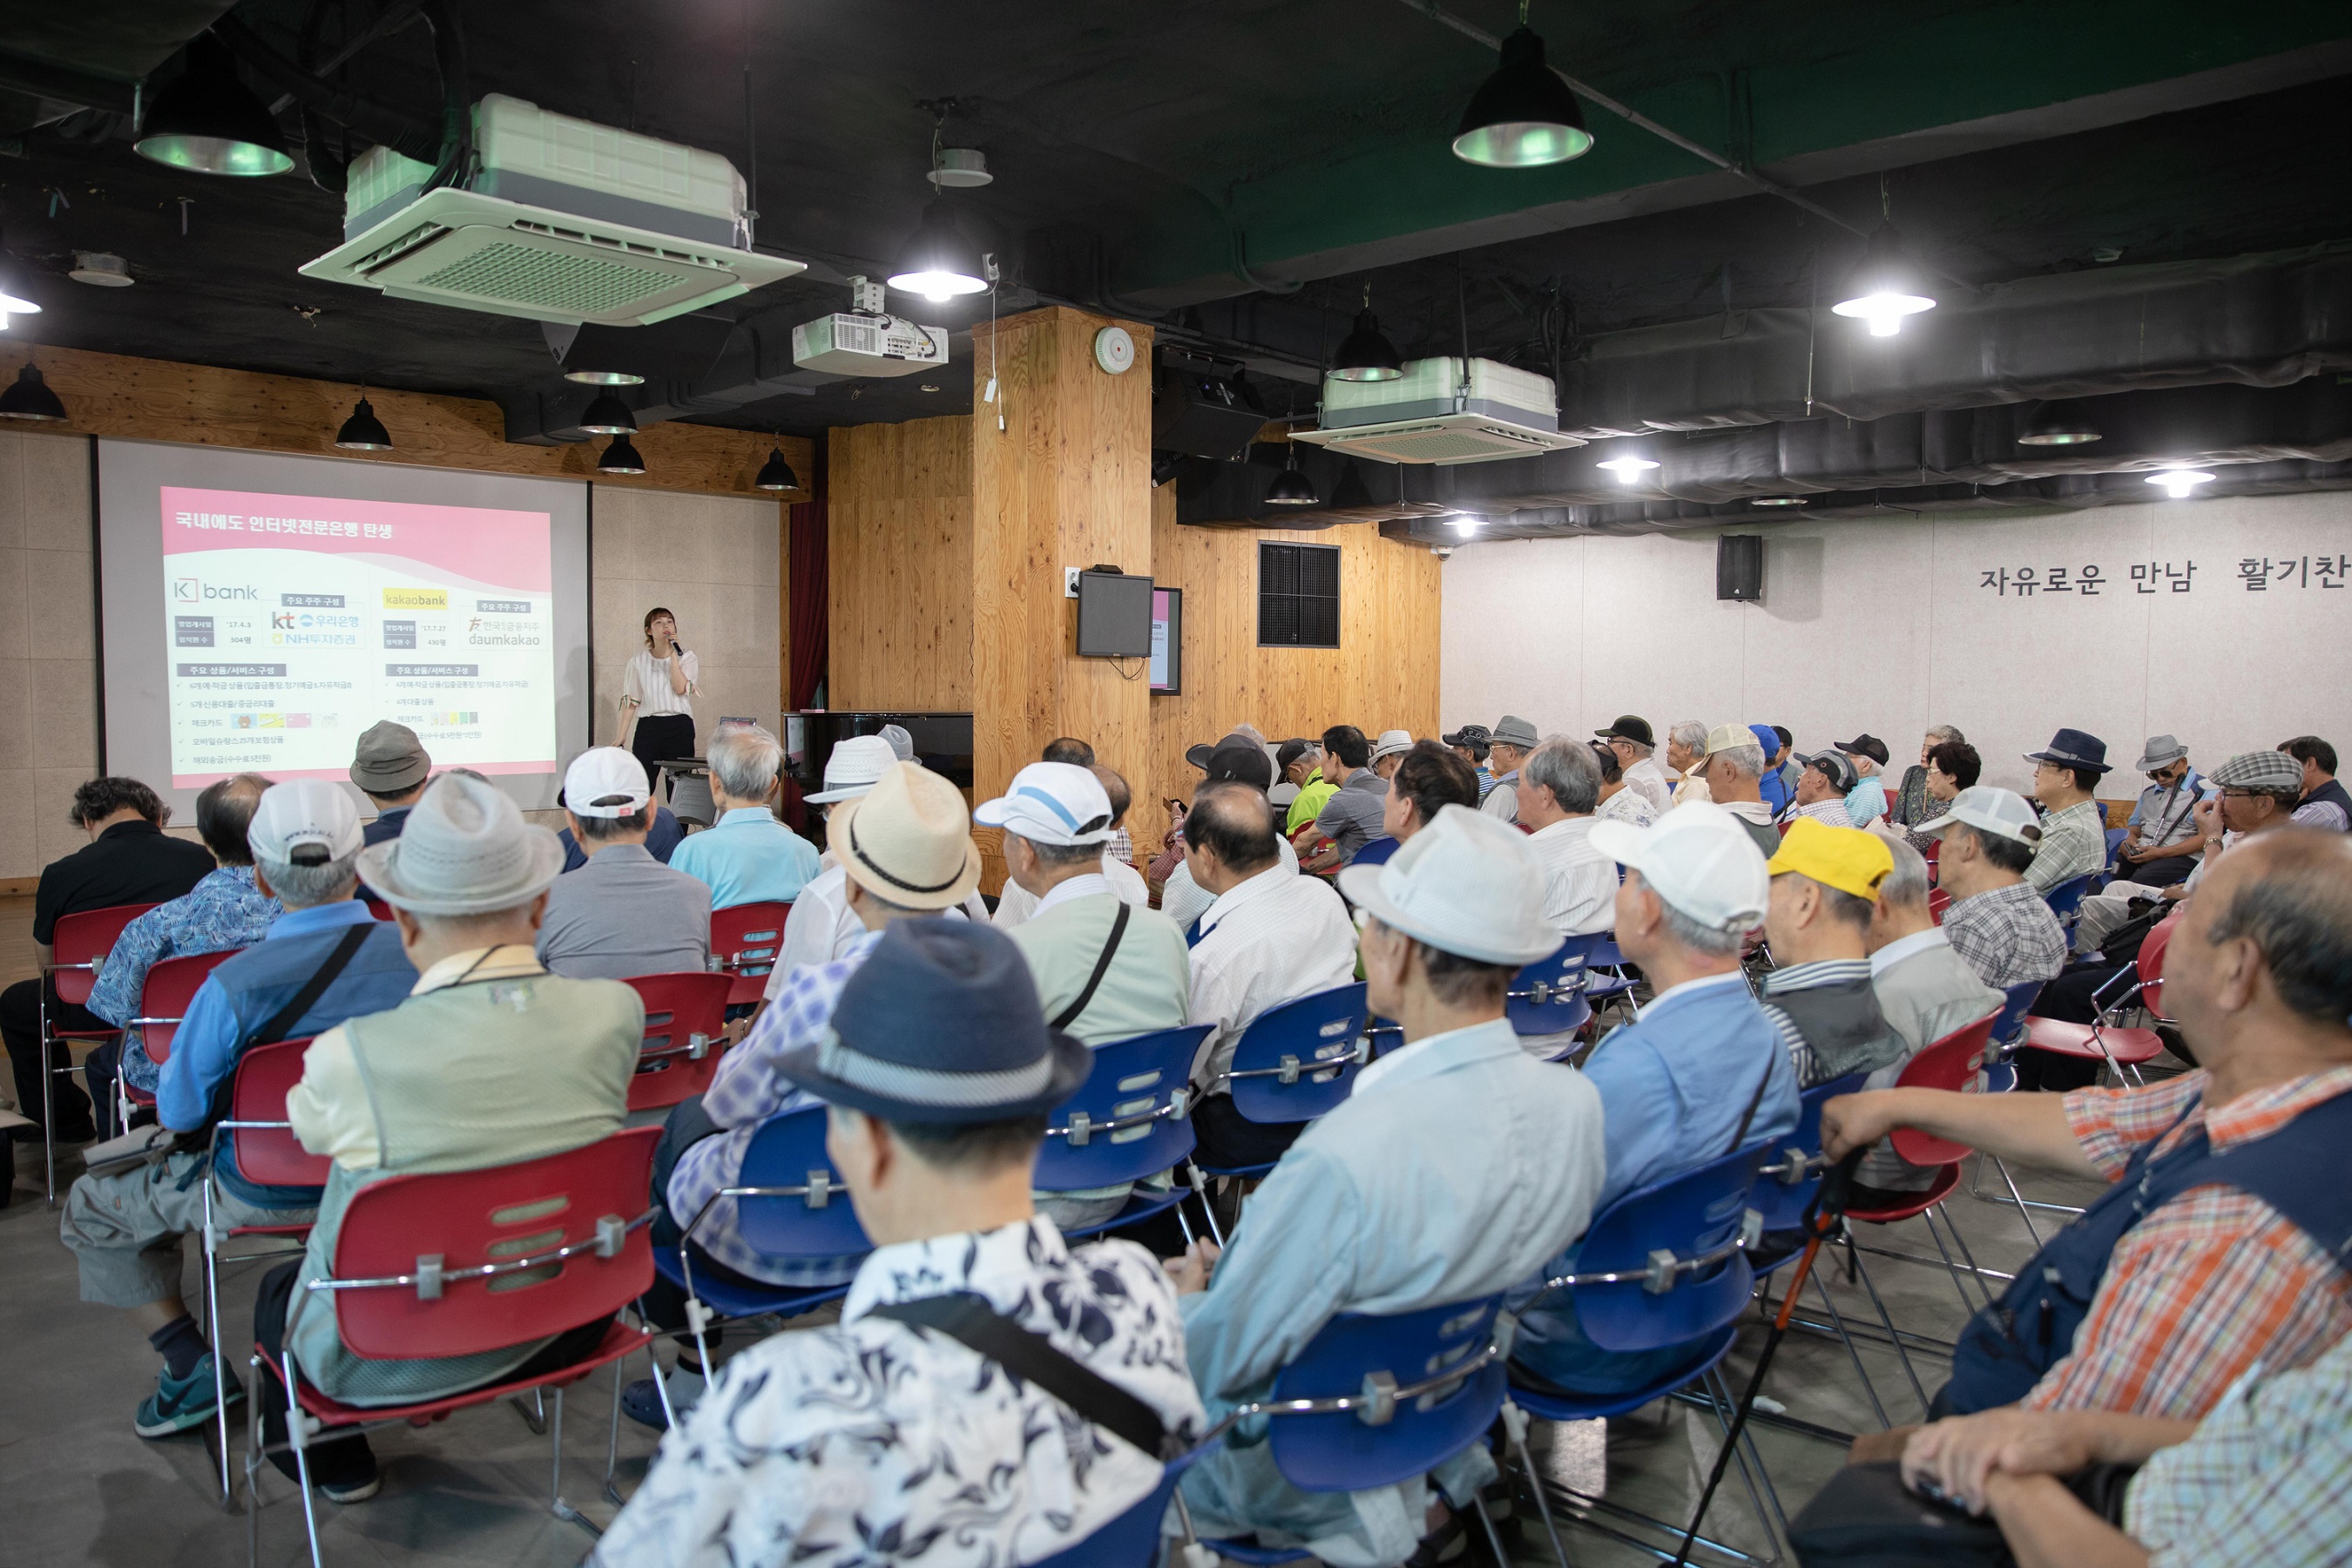 지난 17일 케이뱅크가 서울시 종로구 서울노인복지센터에서 100여명의 어르신들이 참석한 가운데 시니어 디지털 금융교육을 진행하고 있다. 케이뱅크 제공